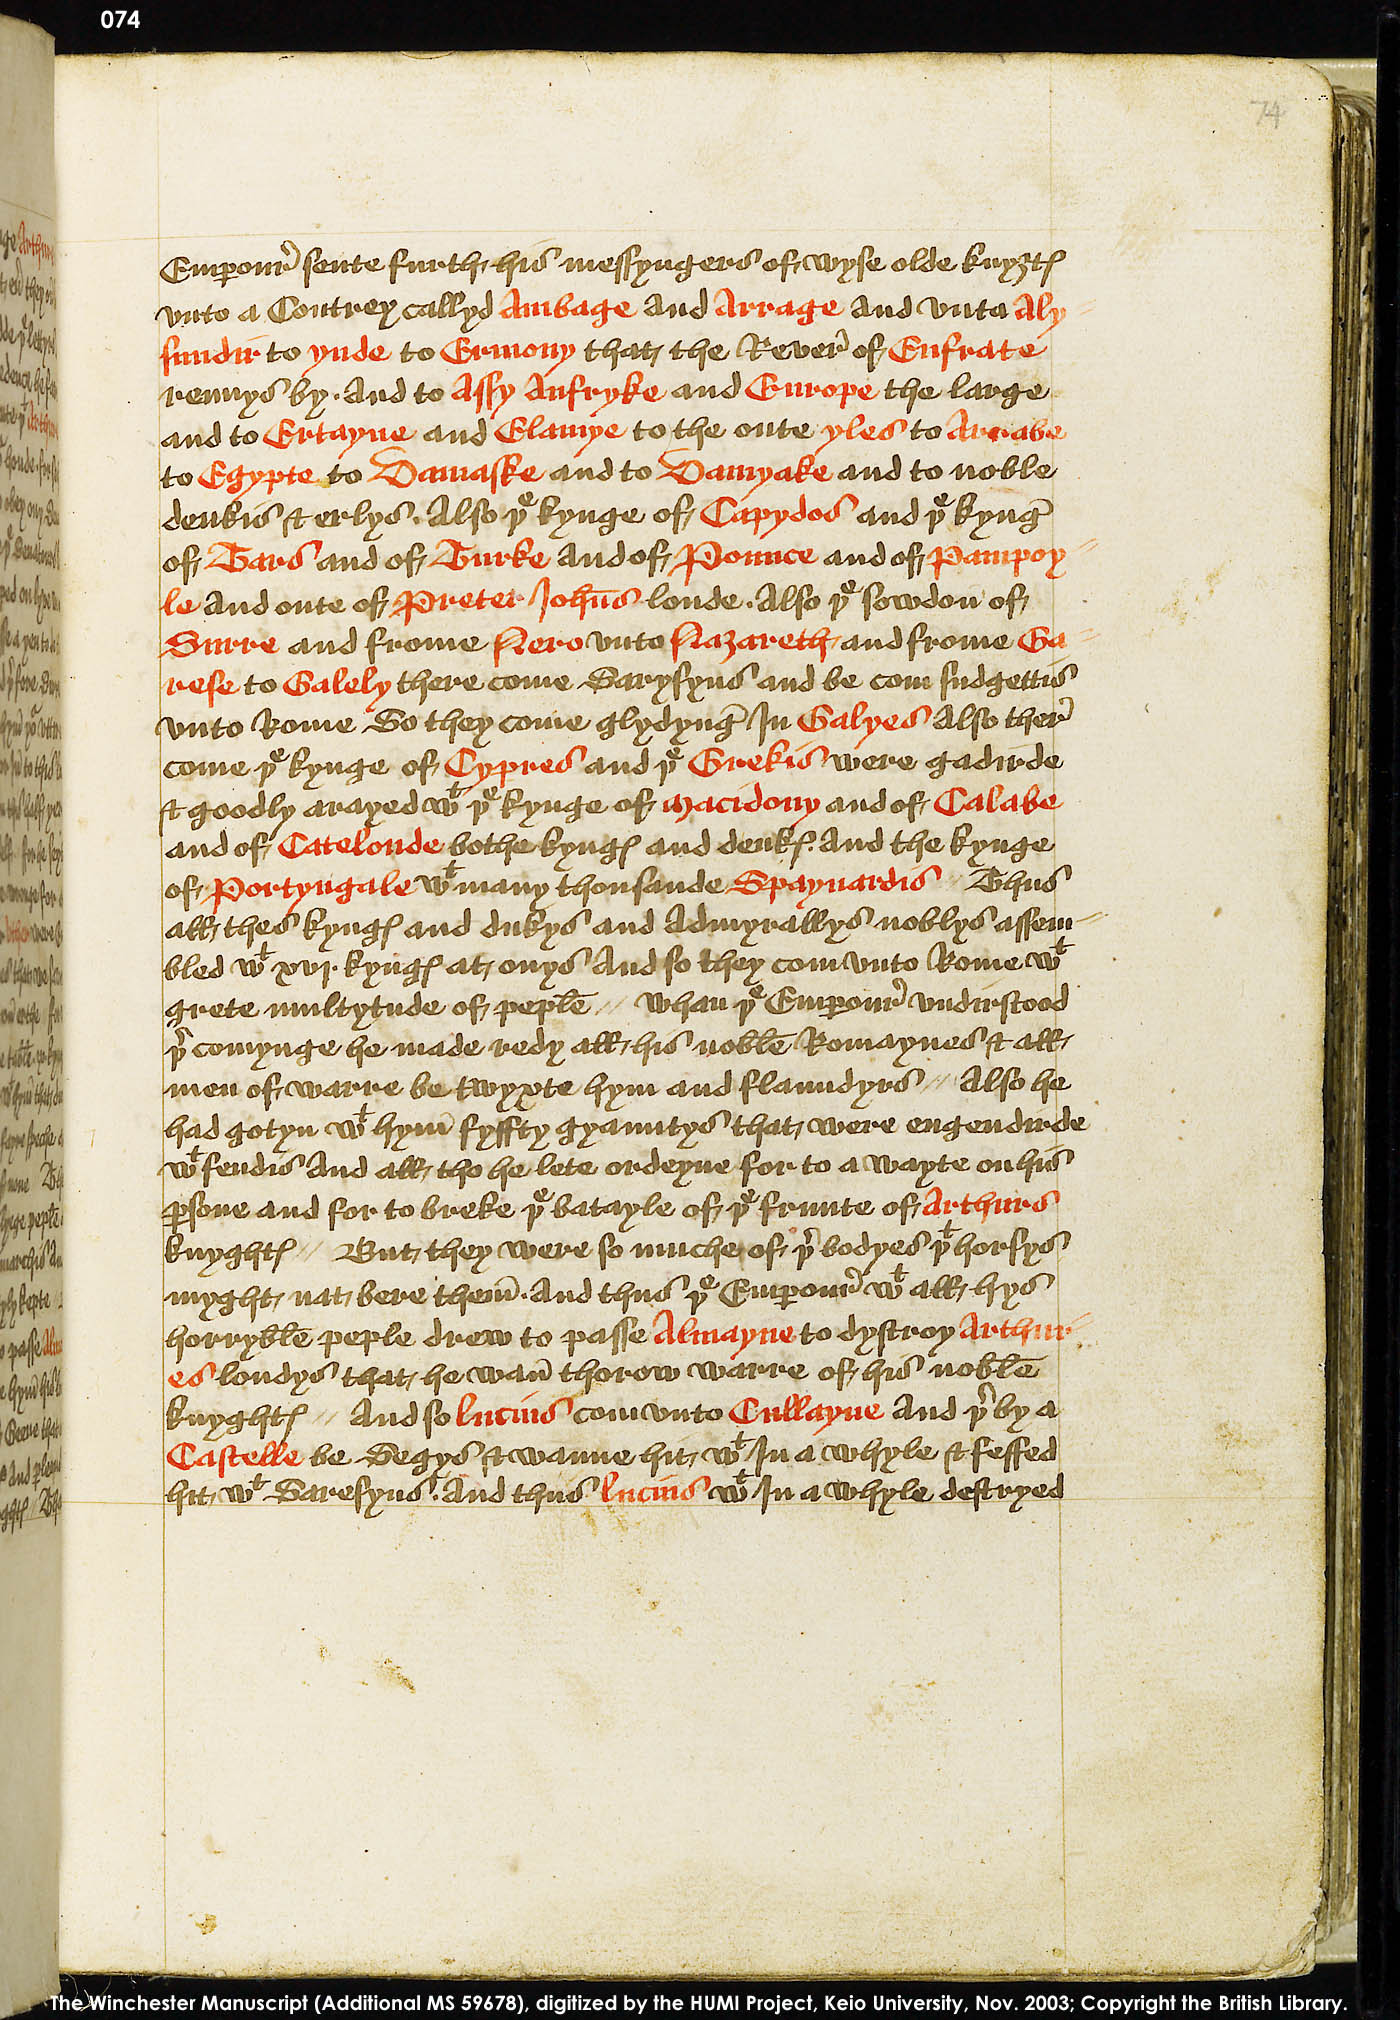 Folio 74r